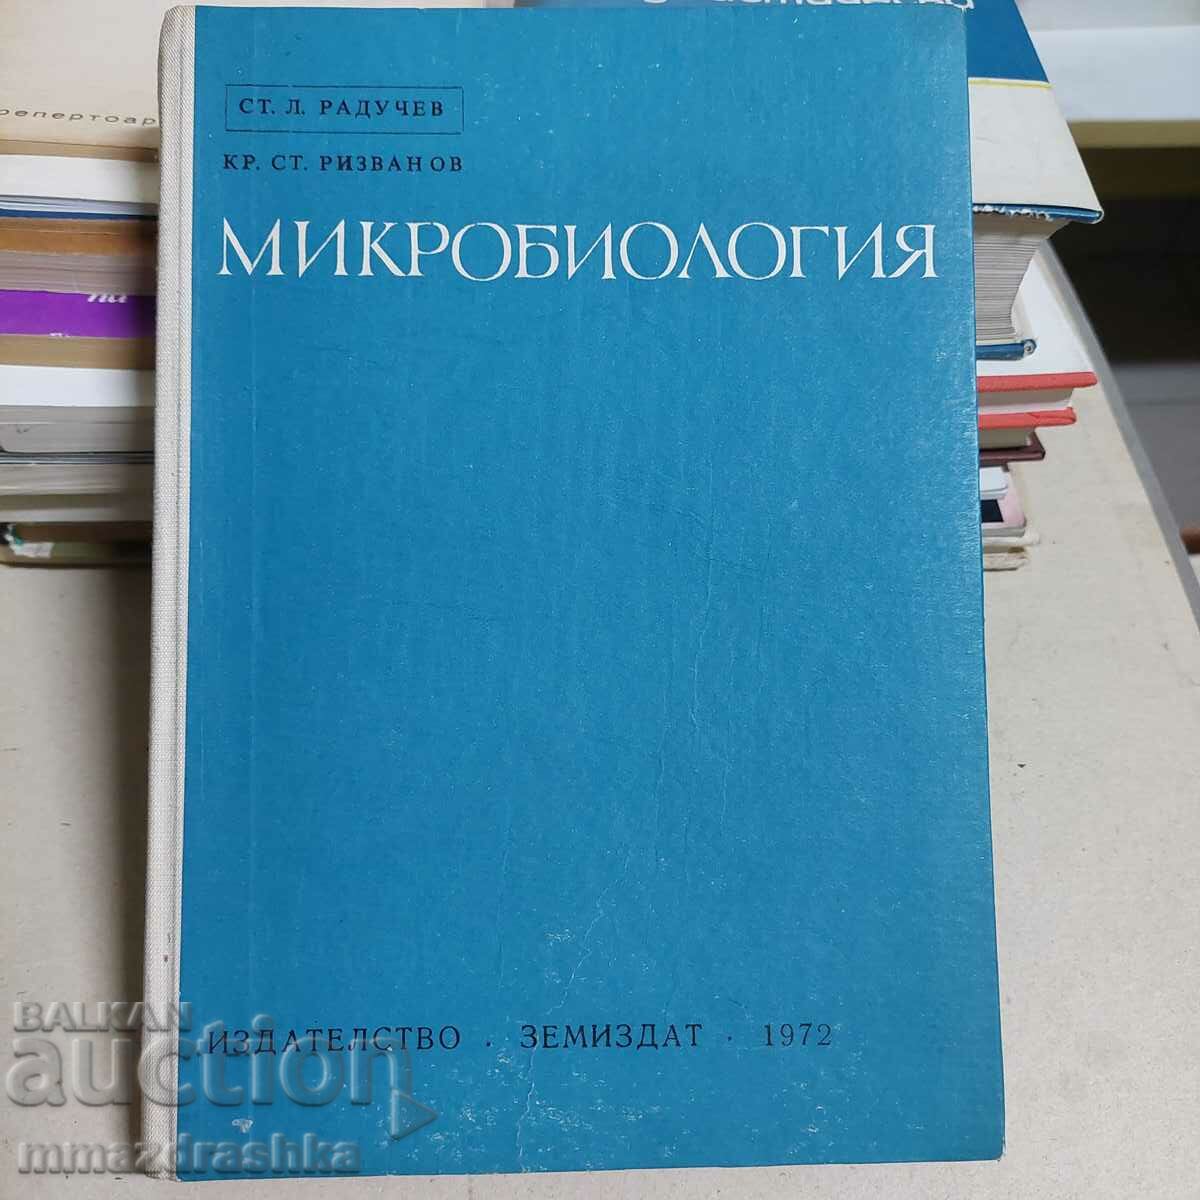 Microbiologie, St. Raduchev